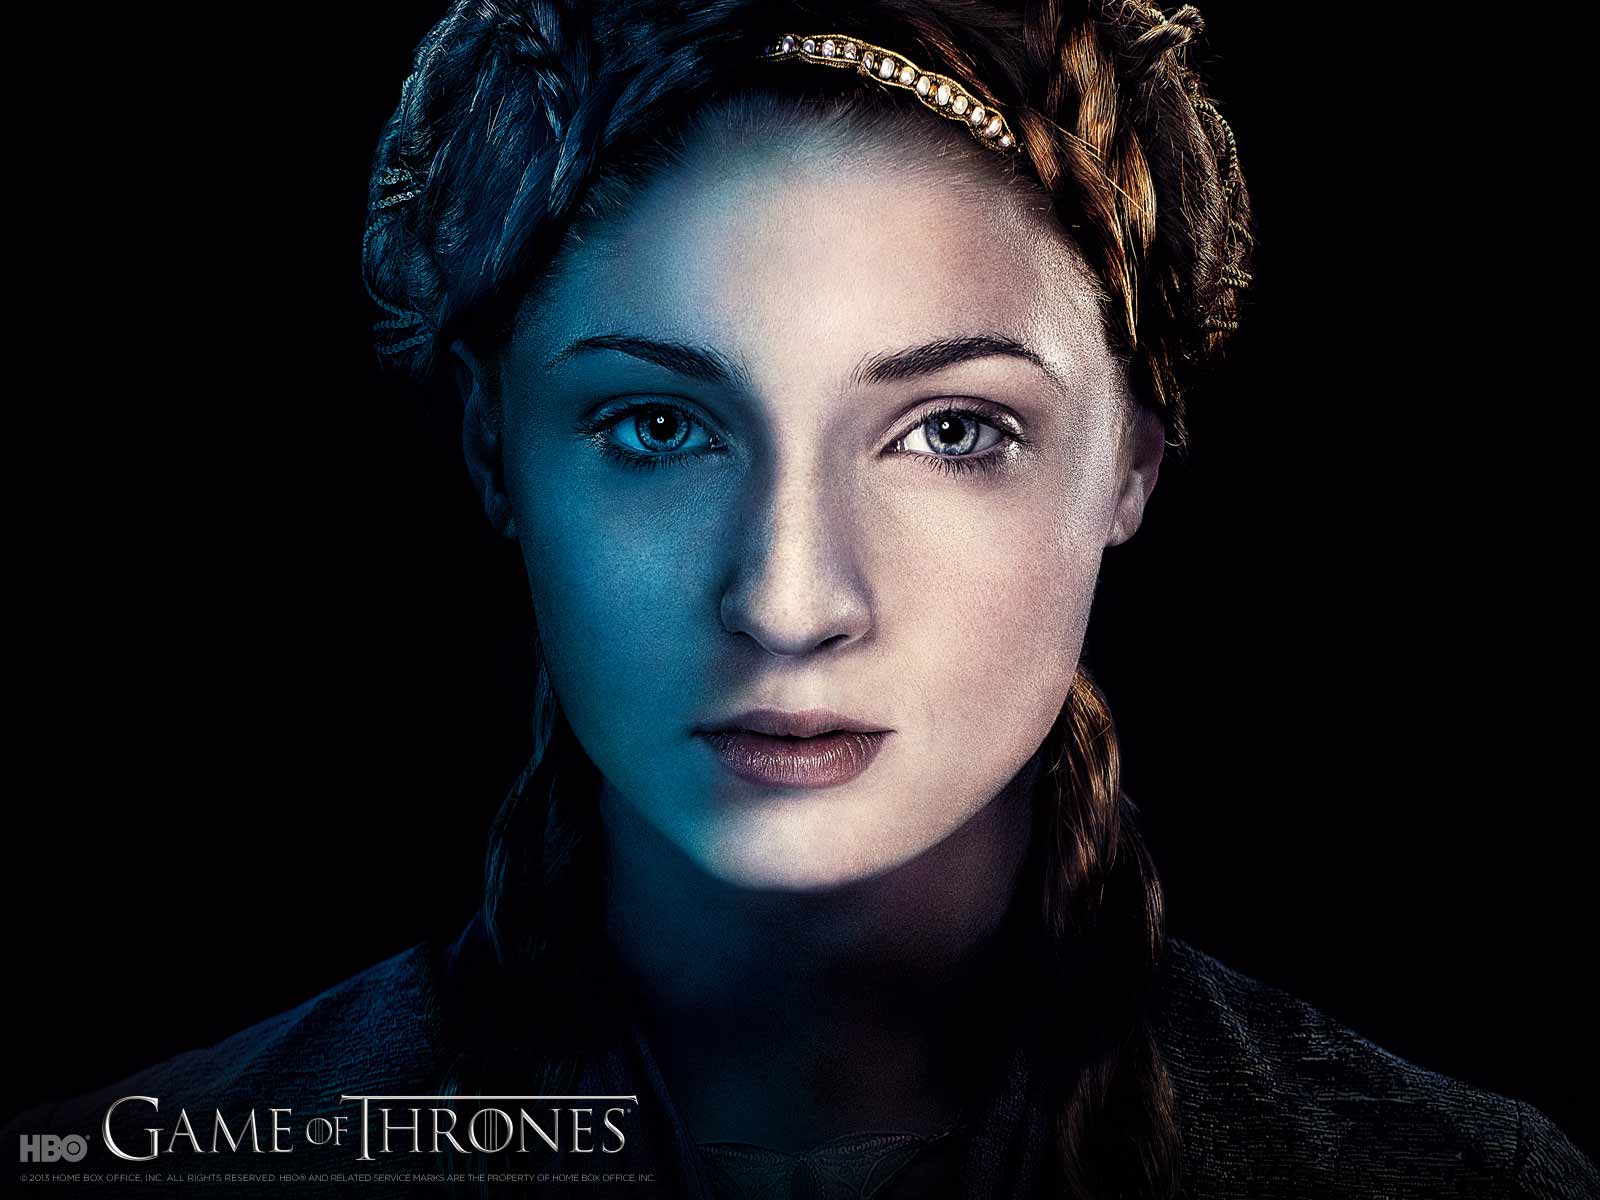 Game-of-Thrones-season-4-wallpaper-Sansa-game-of-thrones-season-4-photos1